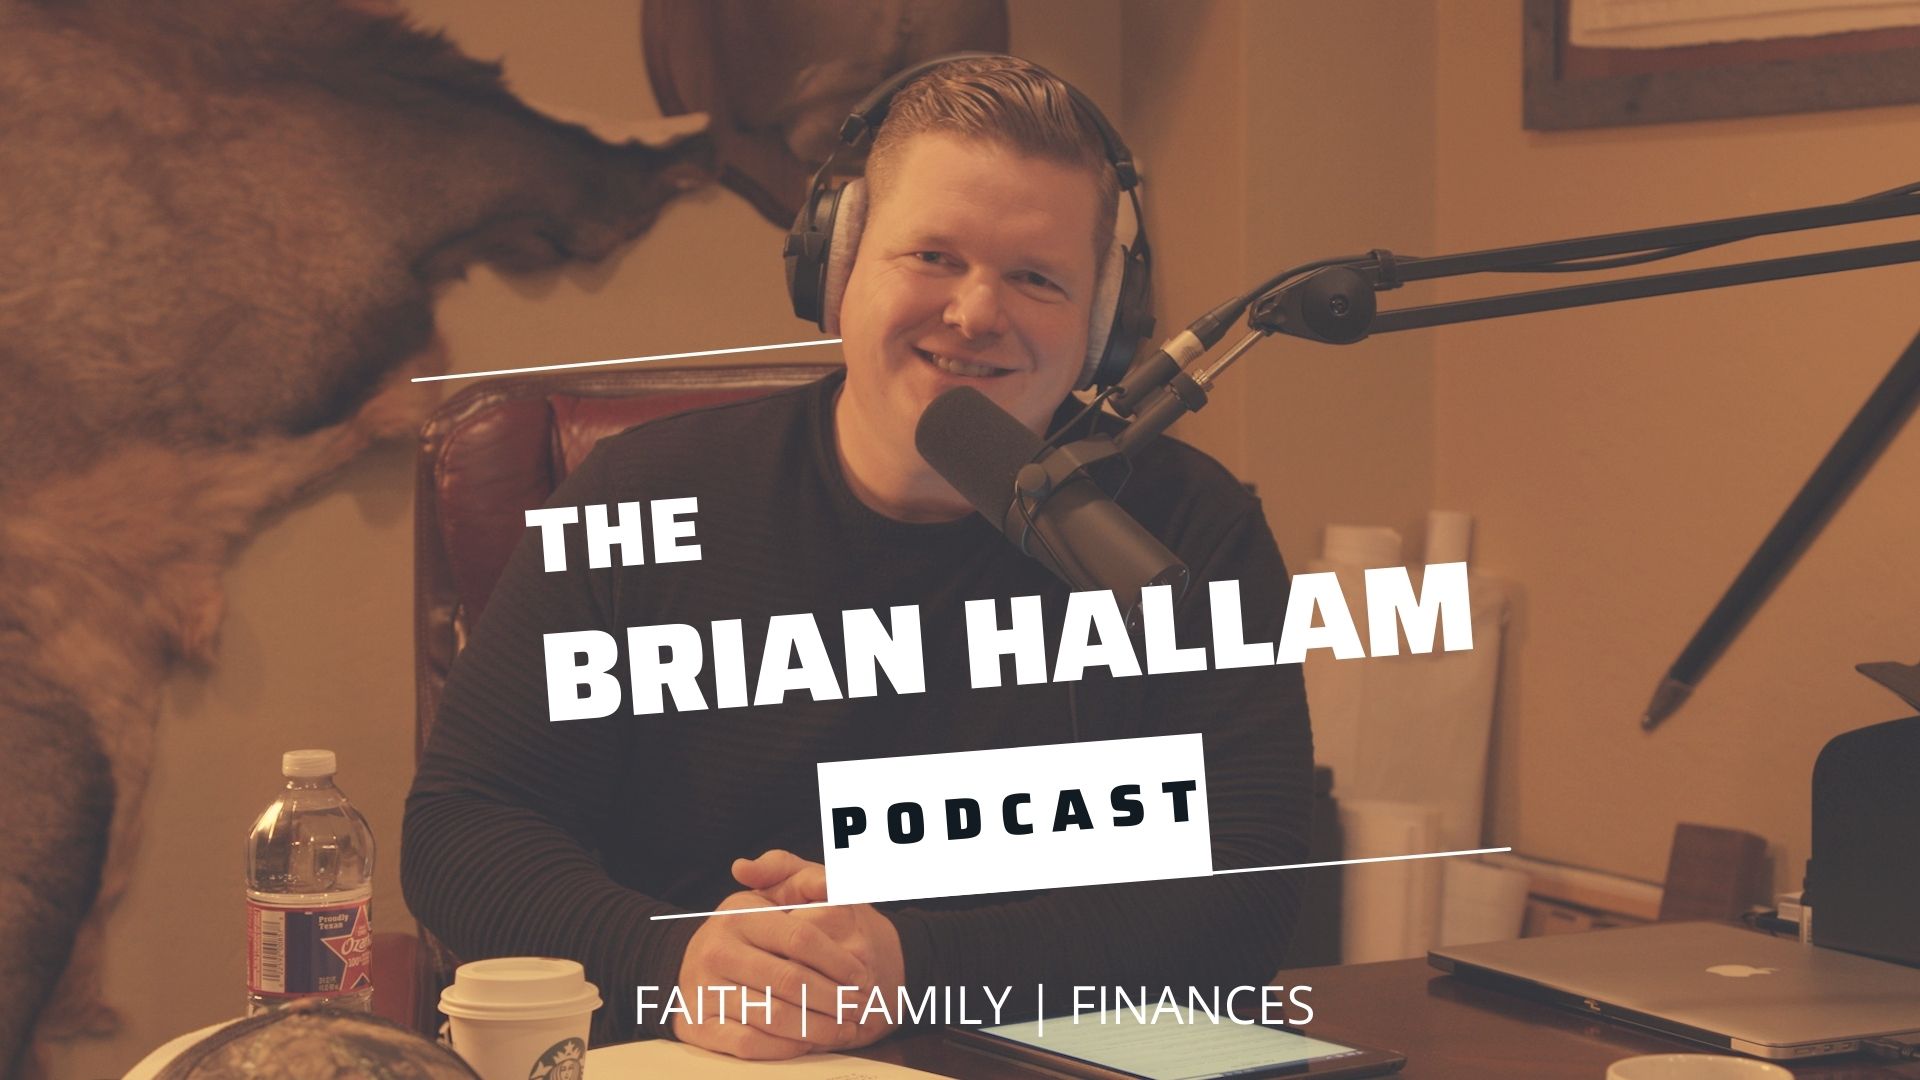 The Brian Hallam Podcast Cover